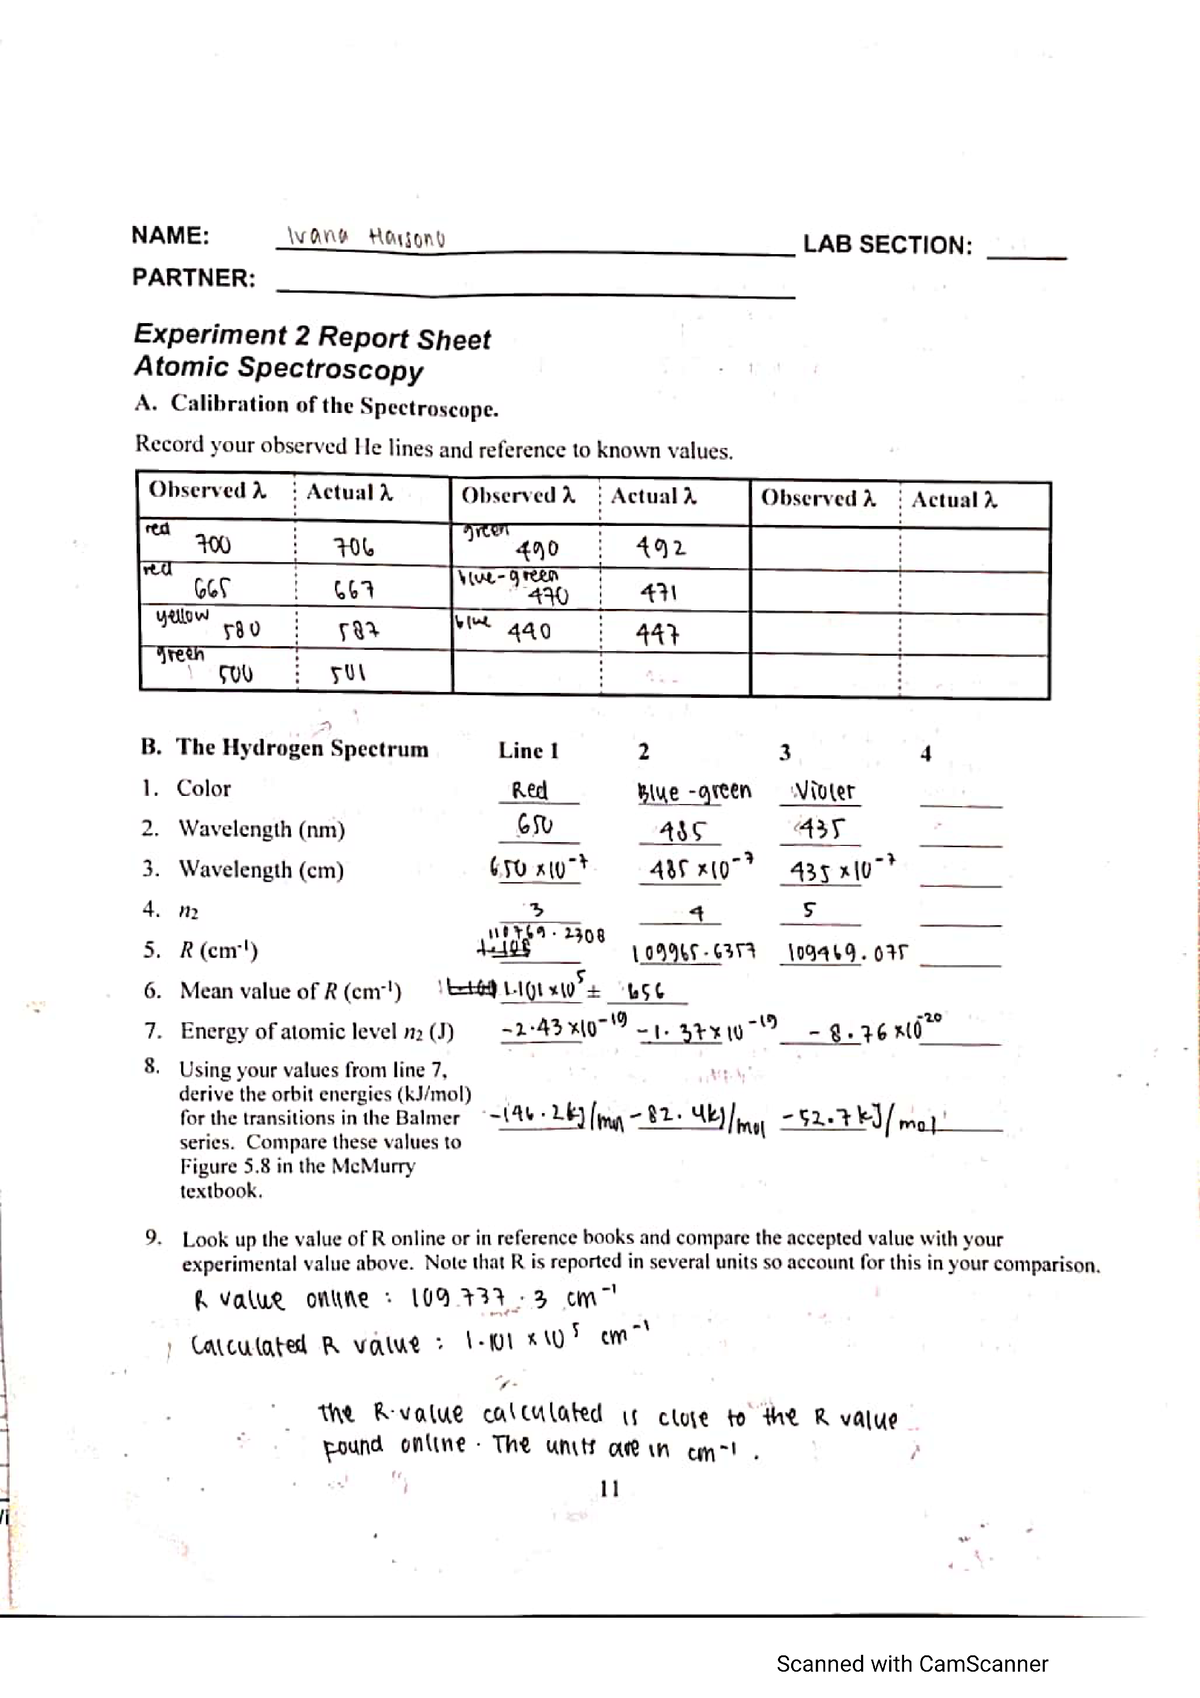 Atomic Spectroscopy Report Sheet - CHEM 177 - Studocu